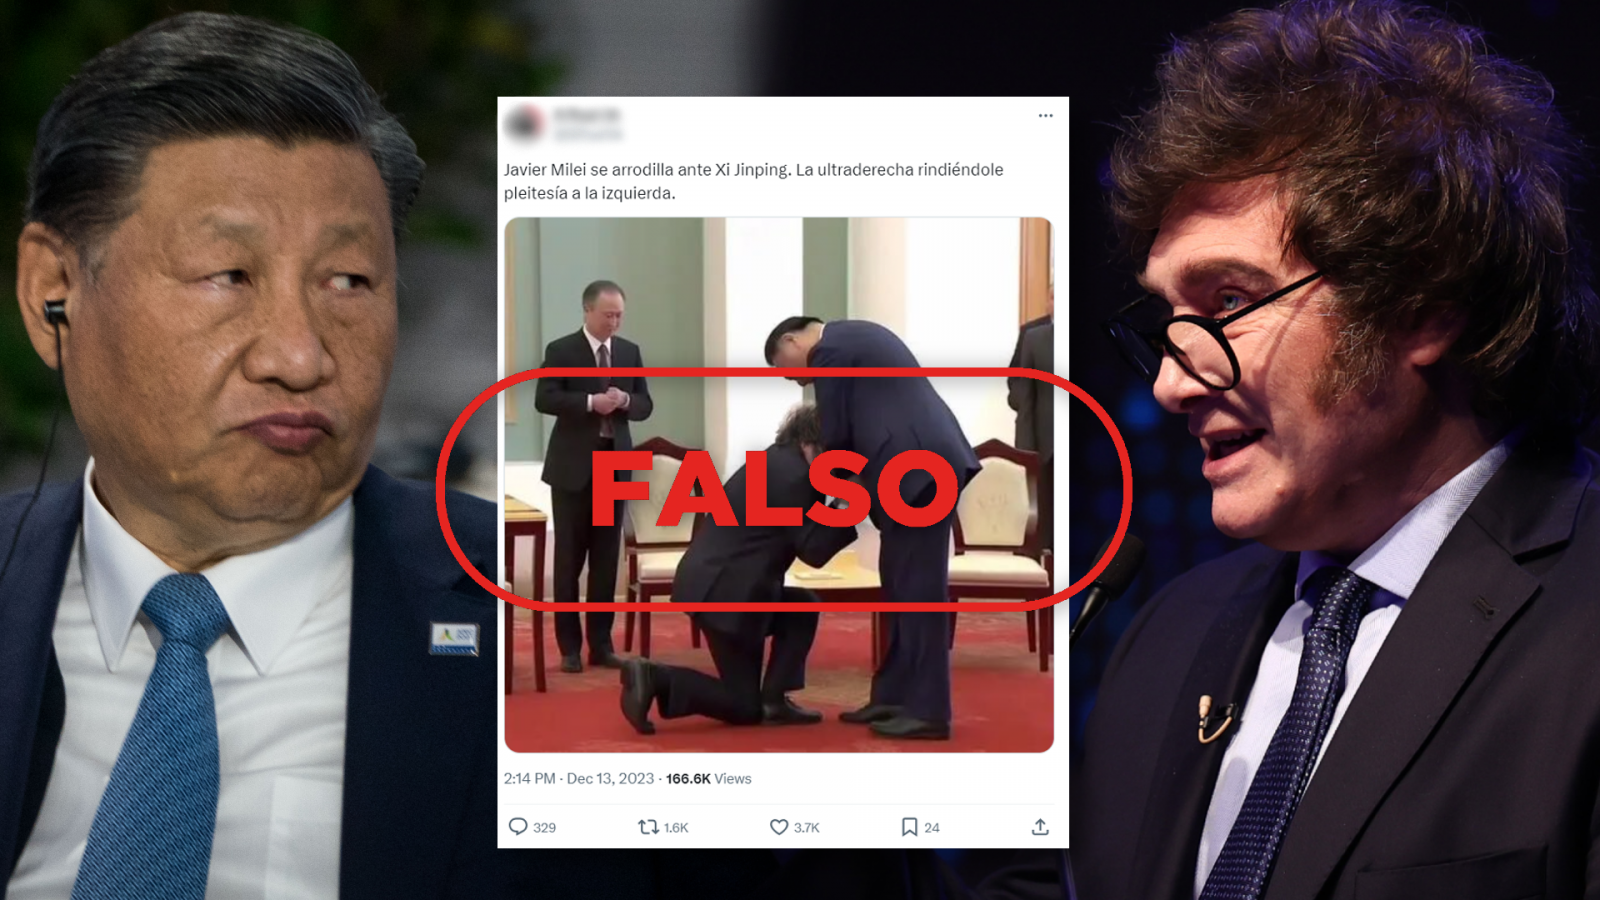 Milei ante Xi Jinping: El presidente argentino no se ha arrodillado ante el mandatario chino, la imagen es un montaje, con sello Falso en rojo de VerificaRTVE